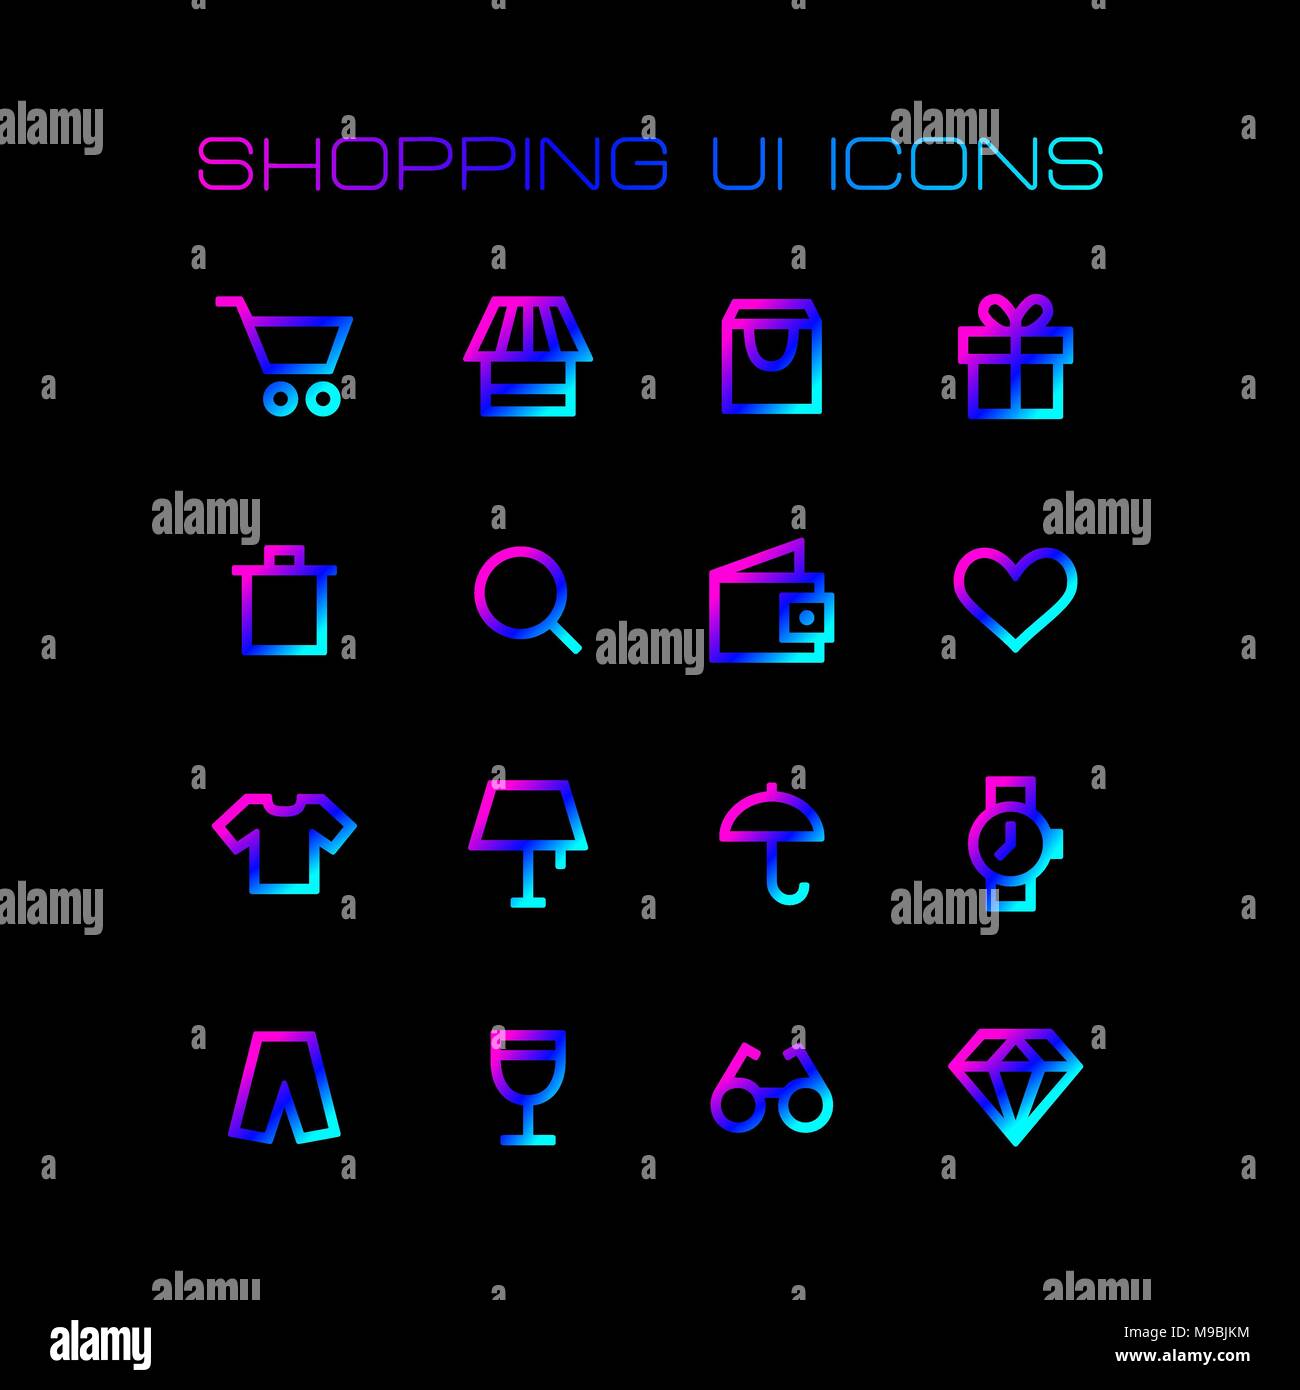 Online shopping ue Icons für einfache flache Design gesetzt. Stock Vektor